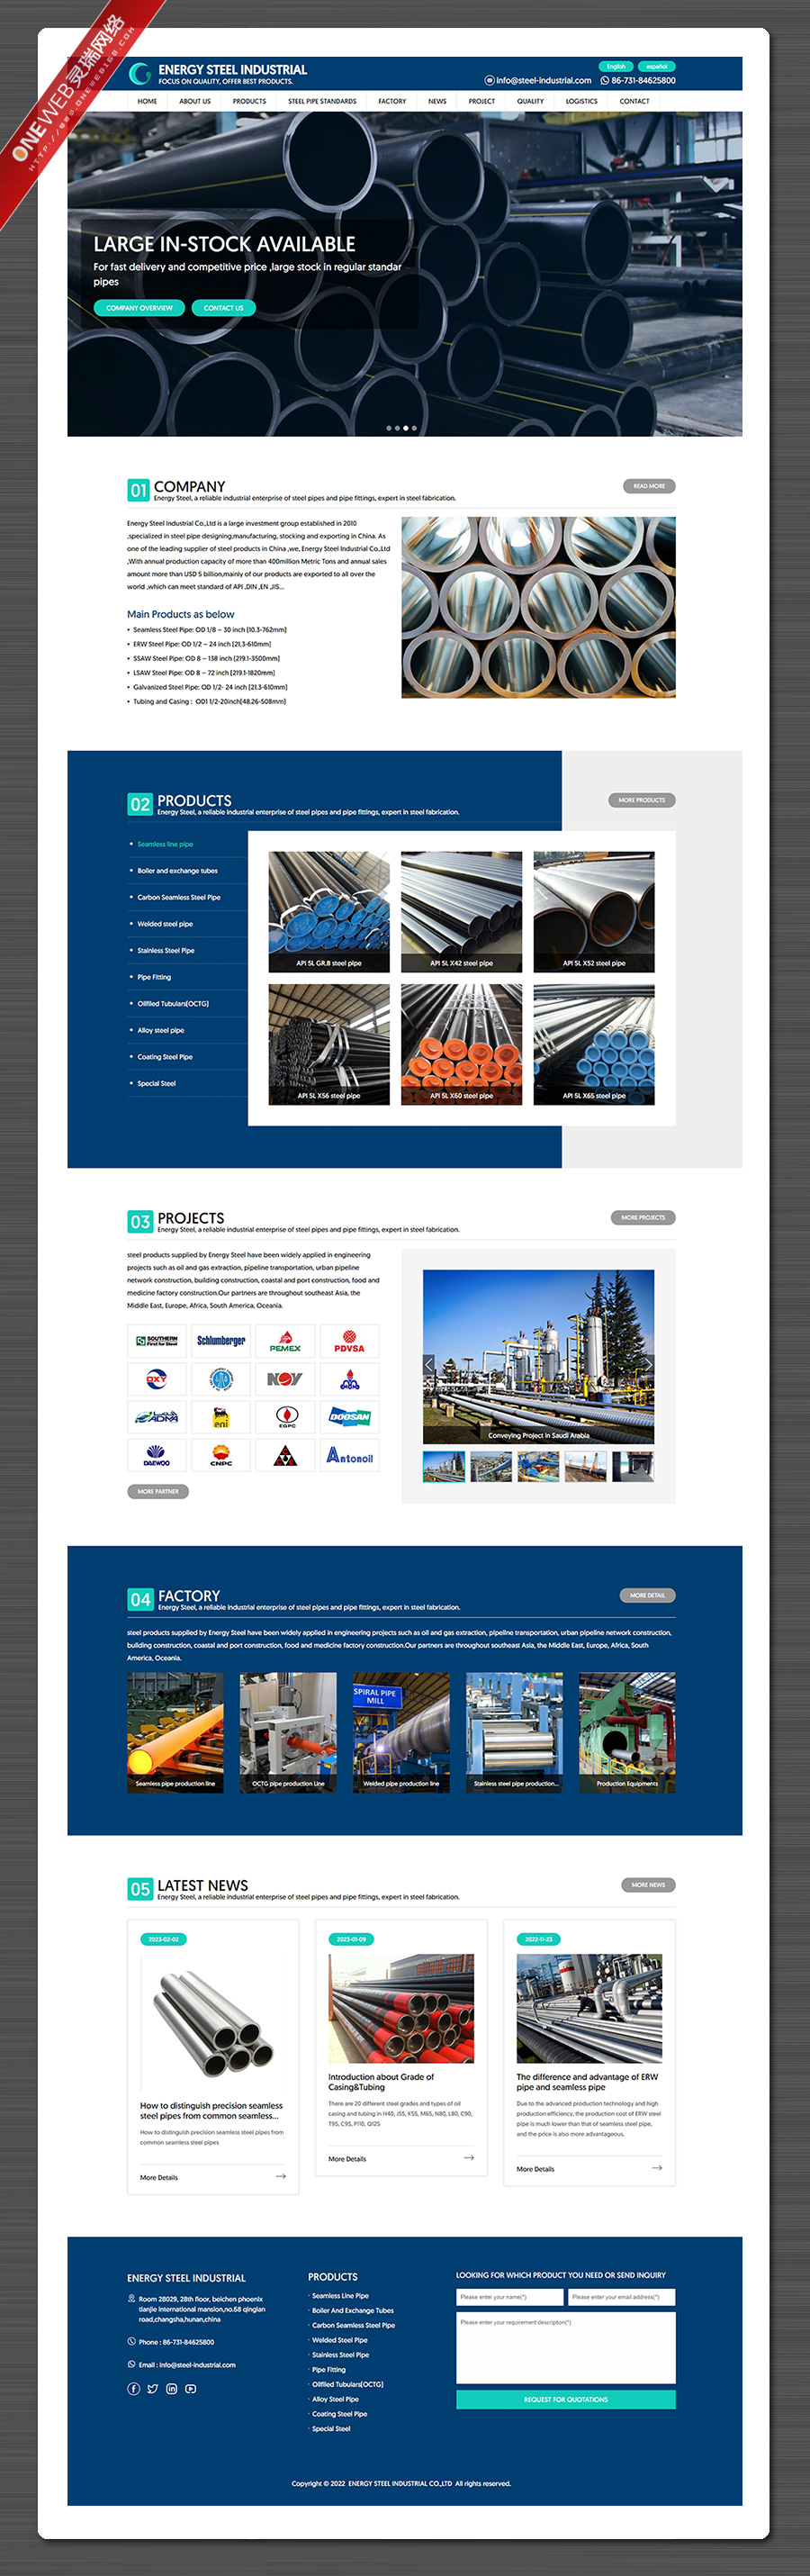 钢材外贸网站建设,深圳网页设计公司